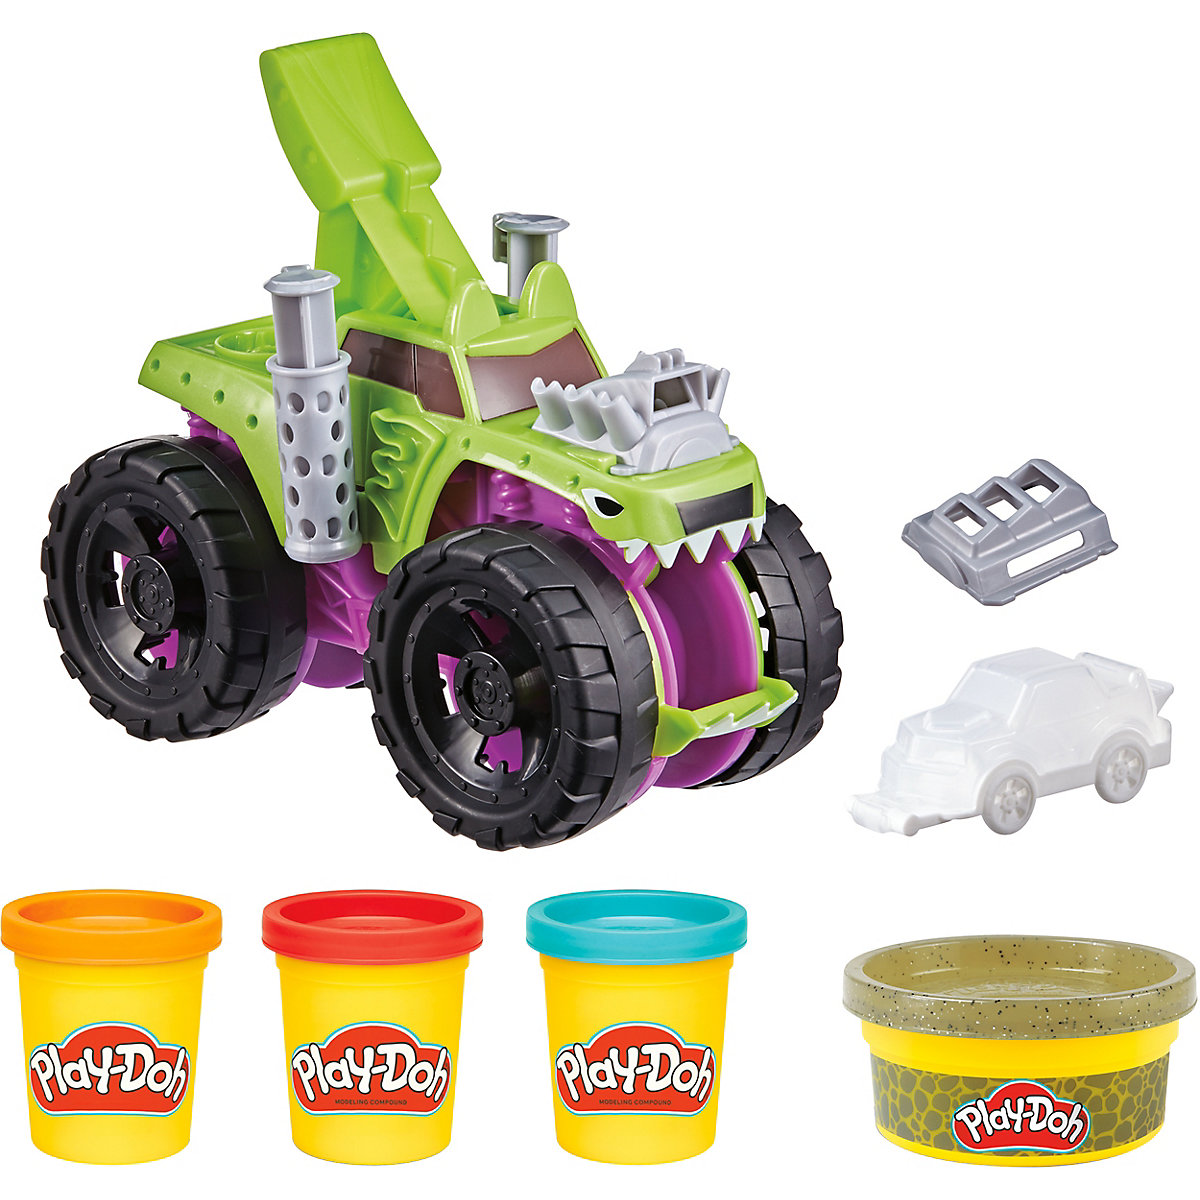 Bild vom Hasbro F13225L0 Play-Doh Mampfender Monster Truck